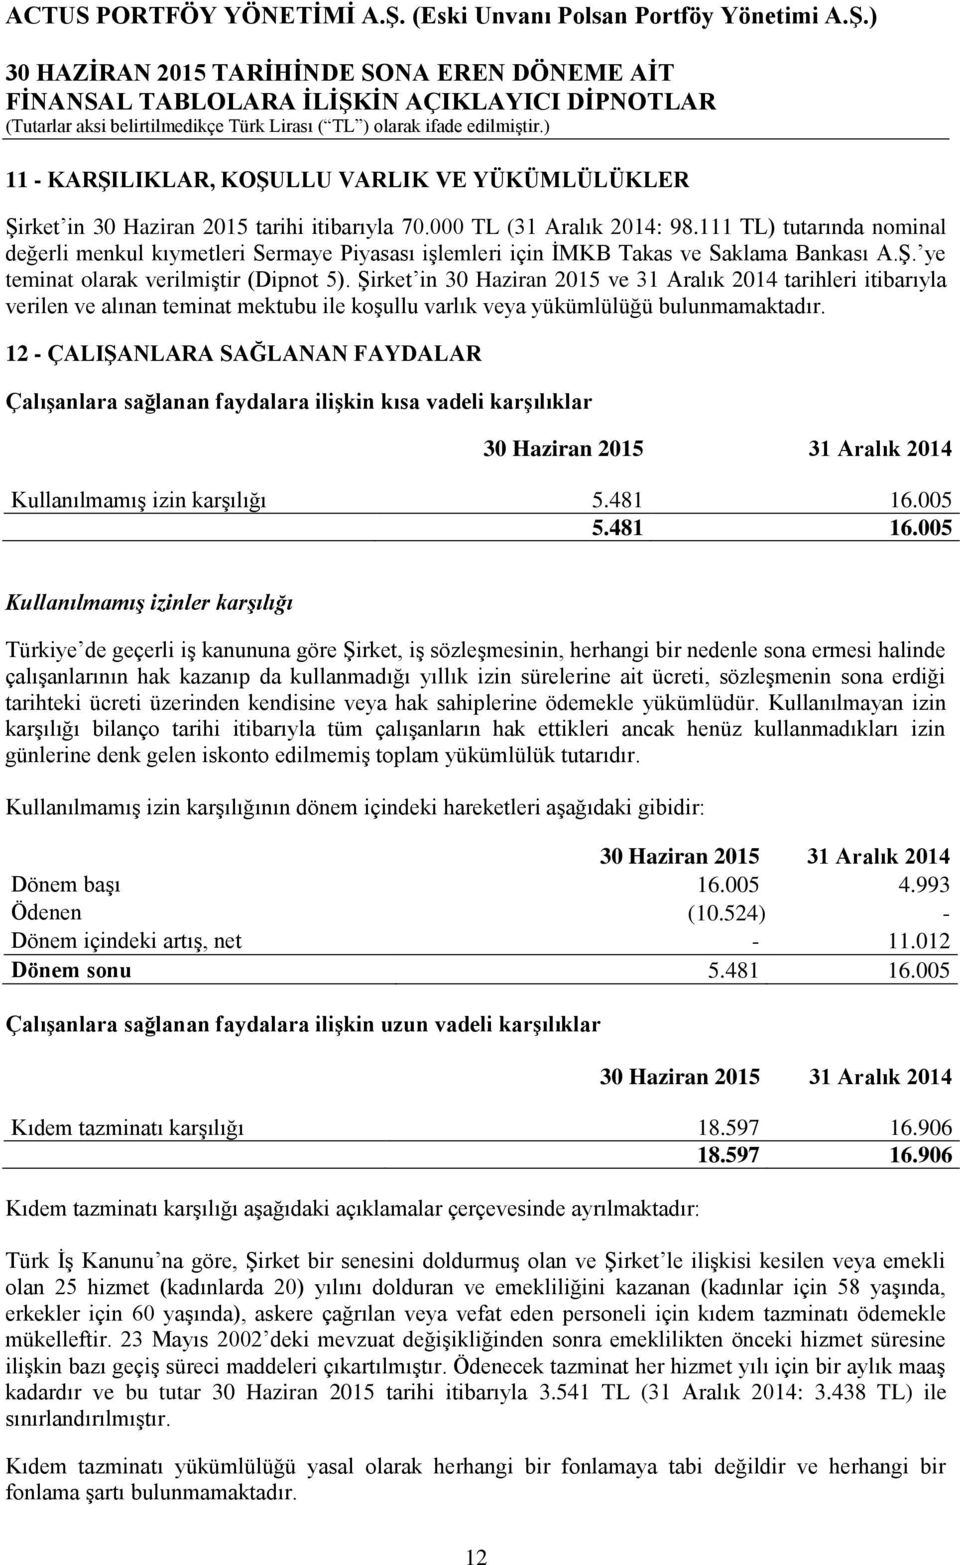 ġirket in 30 Haziran 2015 ve 31 Aralık 2014 tarihleri itibarıyla verilen ve alınan teminat mektubu ile koģullu varlık veya yükümlülüğü bulunmamaktadır.